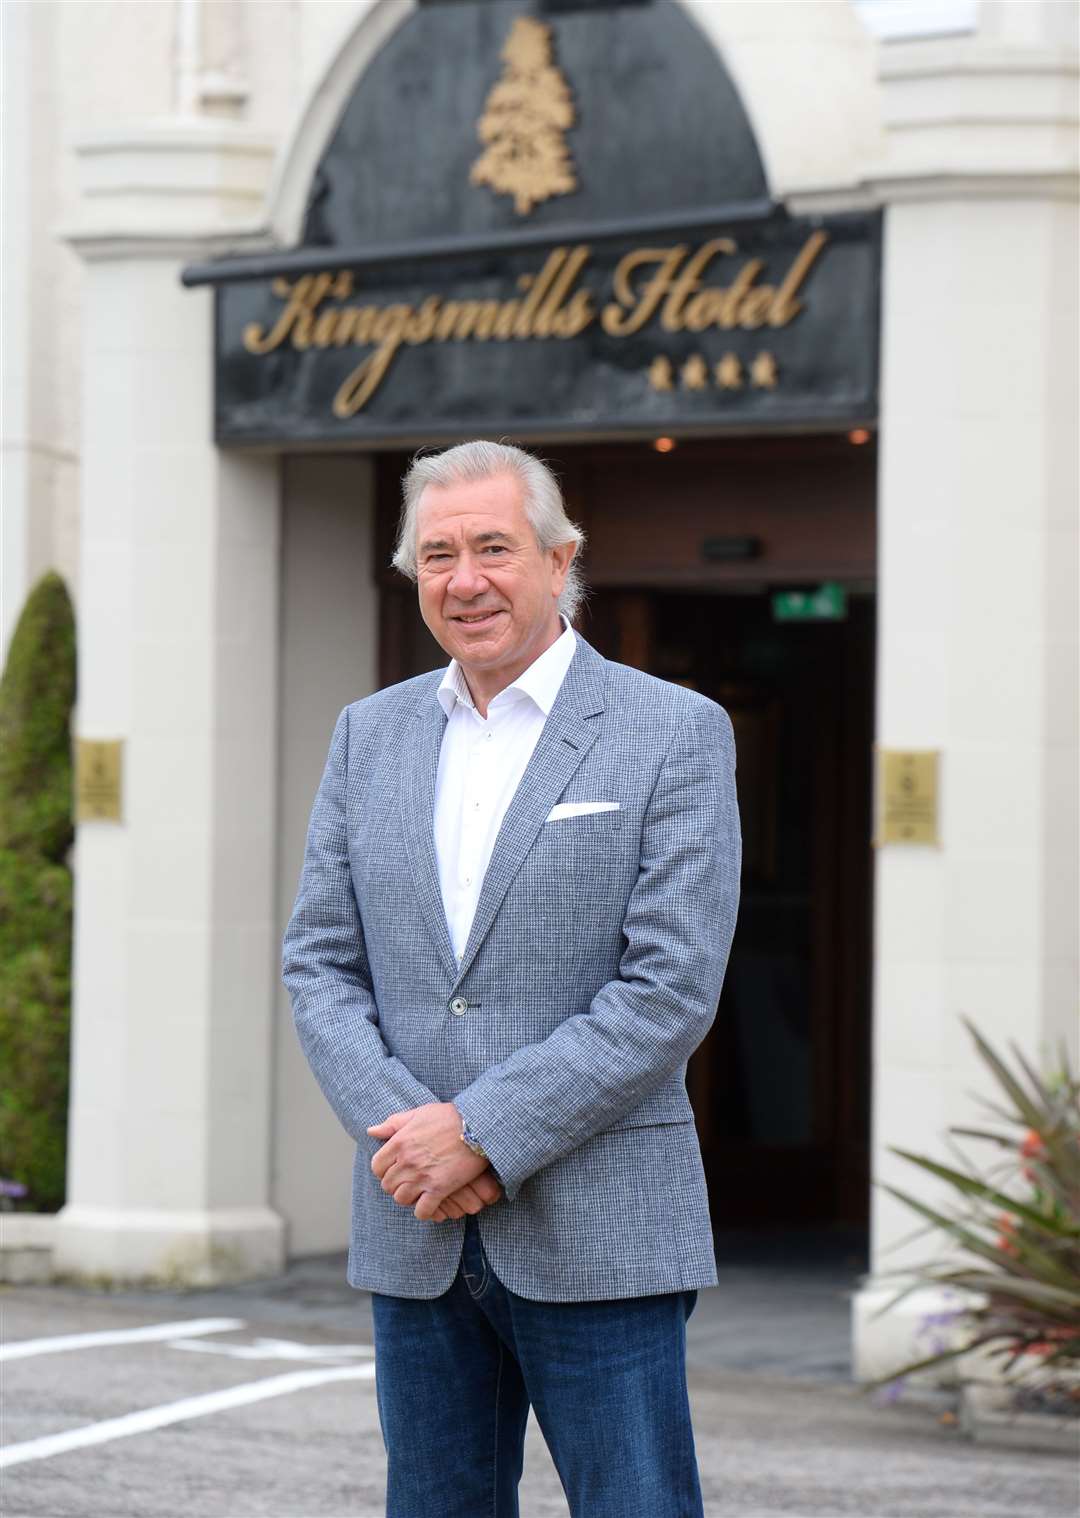 Tony Story of Kingsmills Hotel.